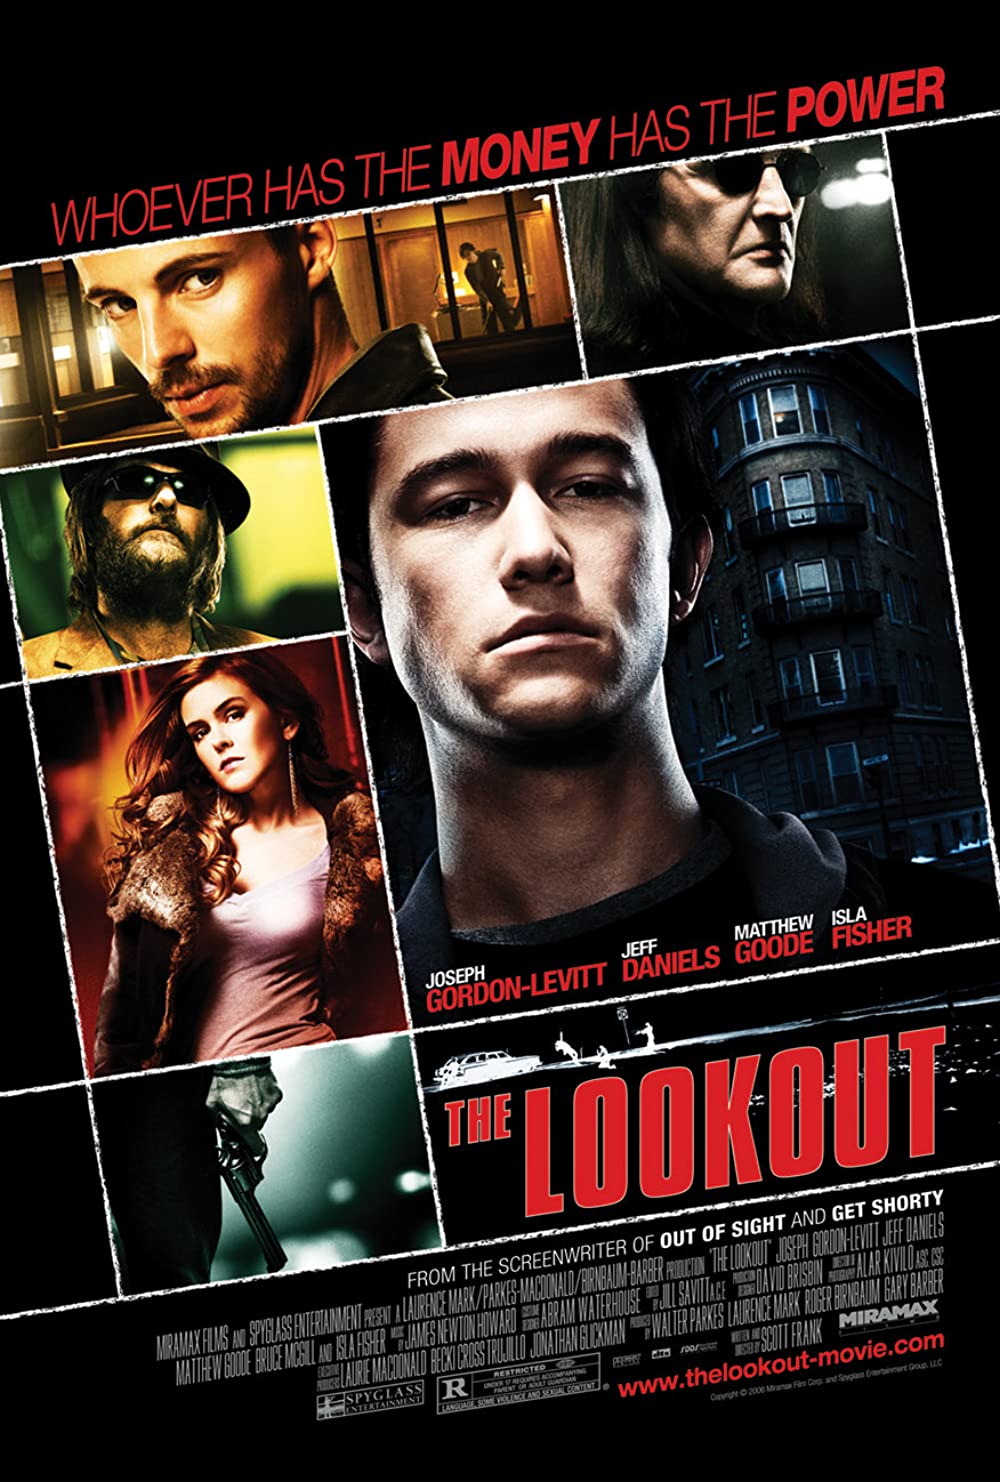 ดูหนังออนไลน์ The Lookout 2007 ดับแผนปล้น ต้องชนนรก 037moviefree